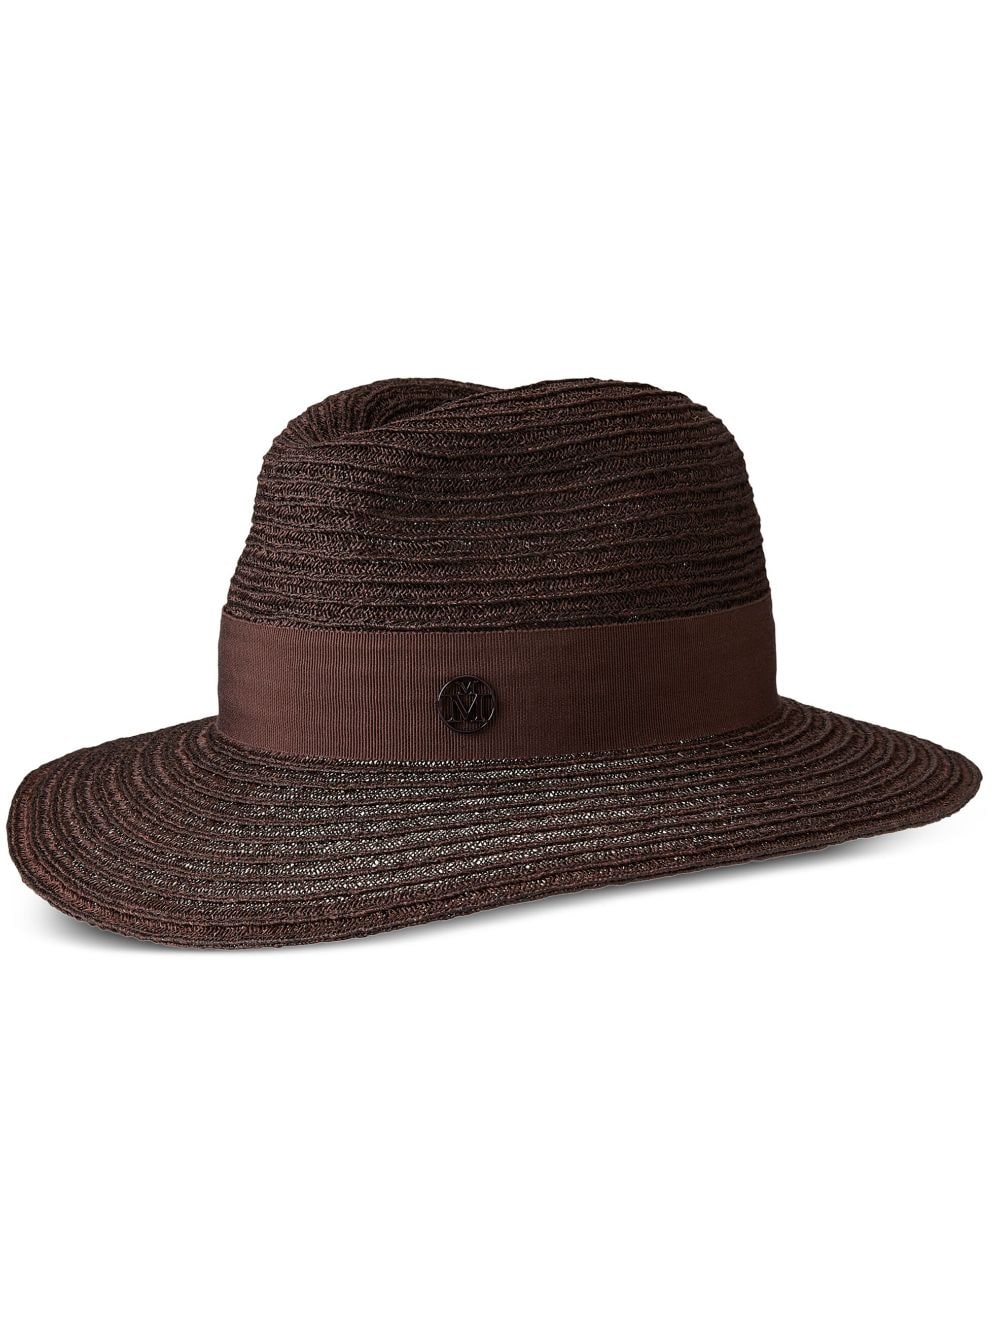 Henrietta straw Fedora hat